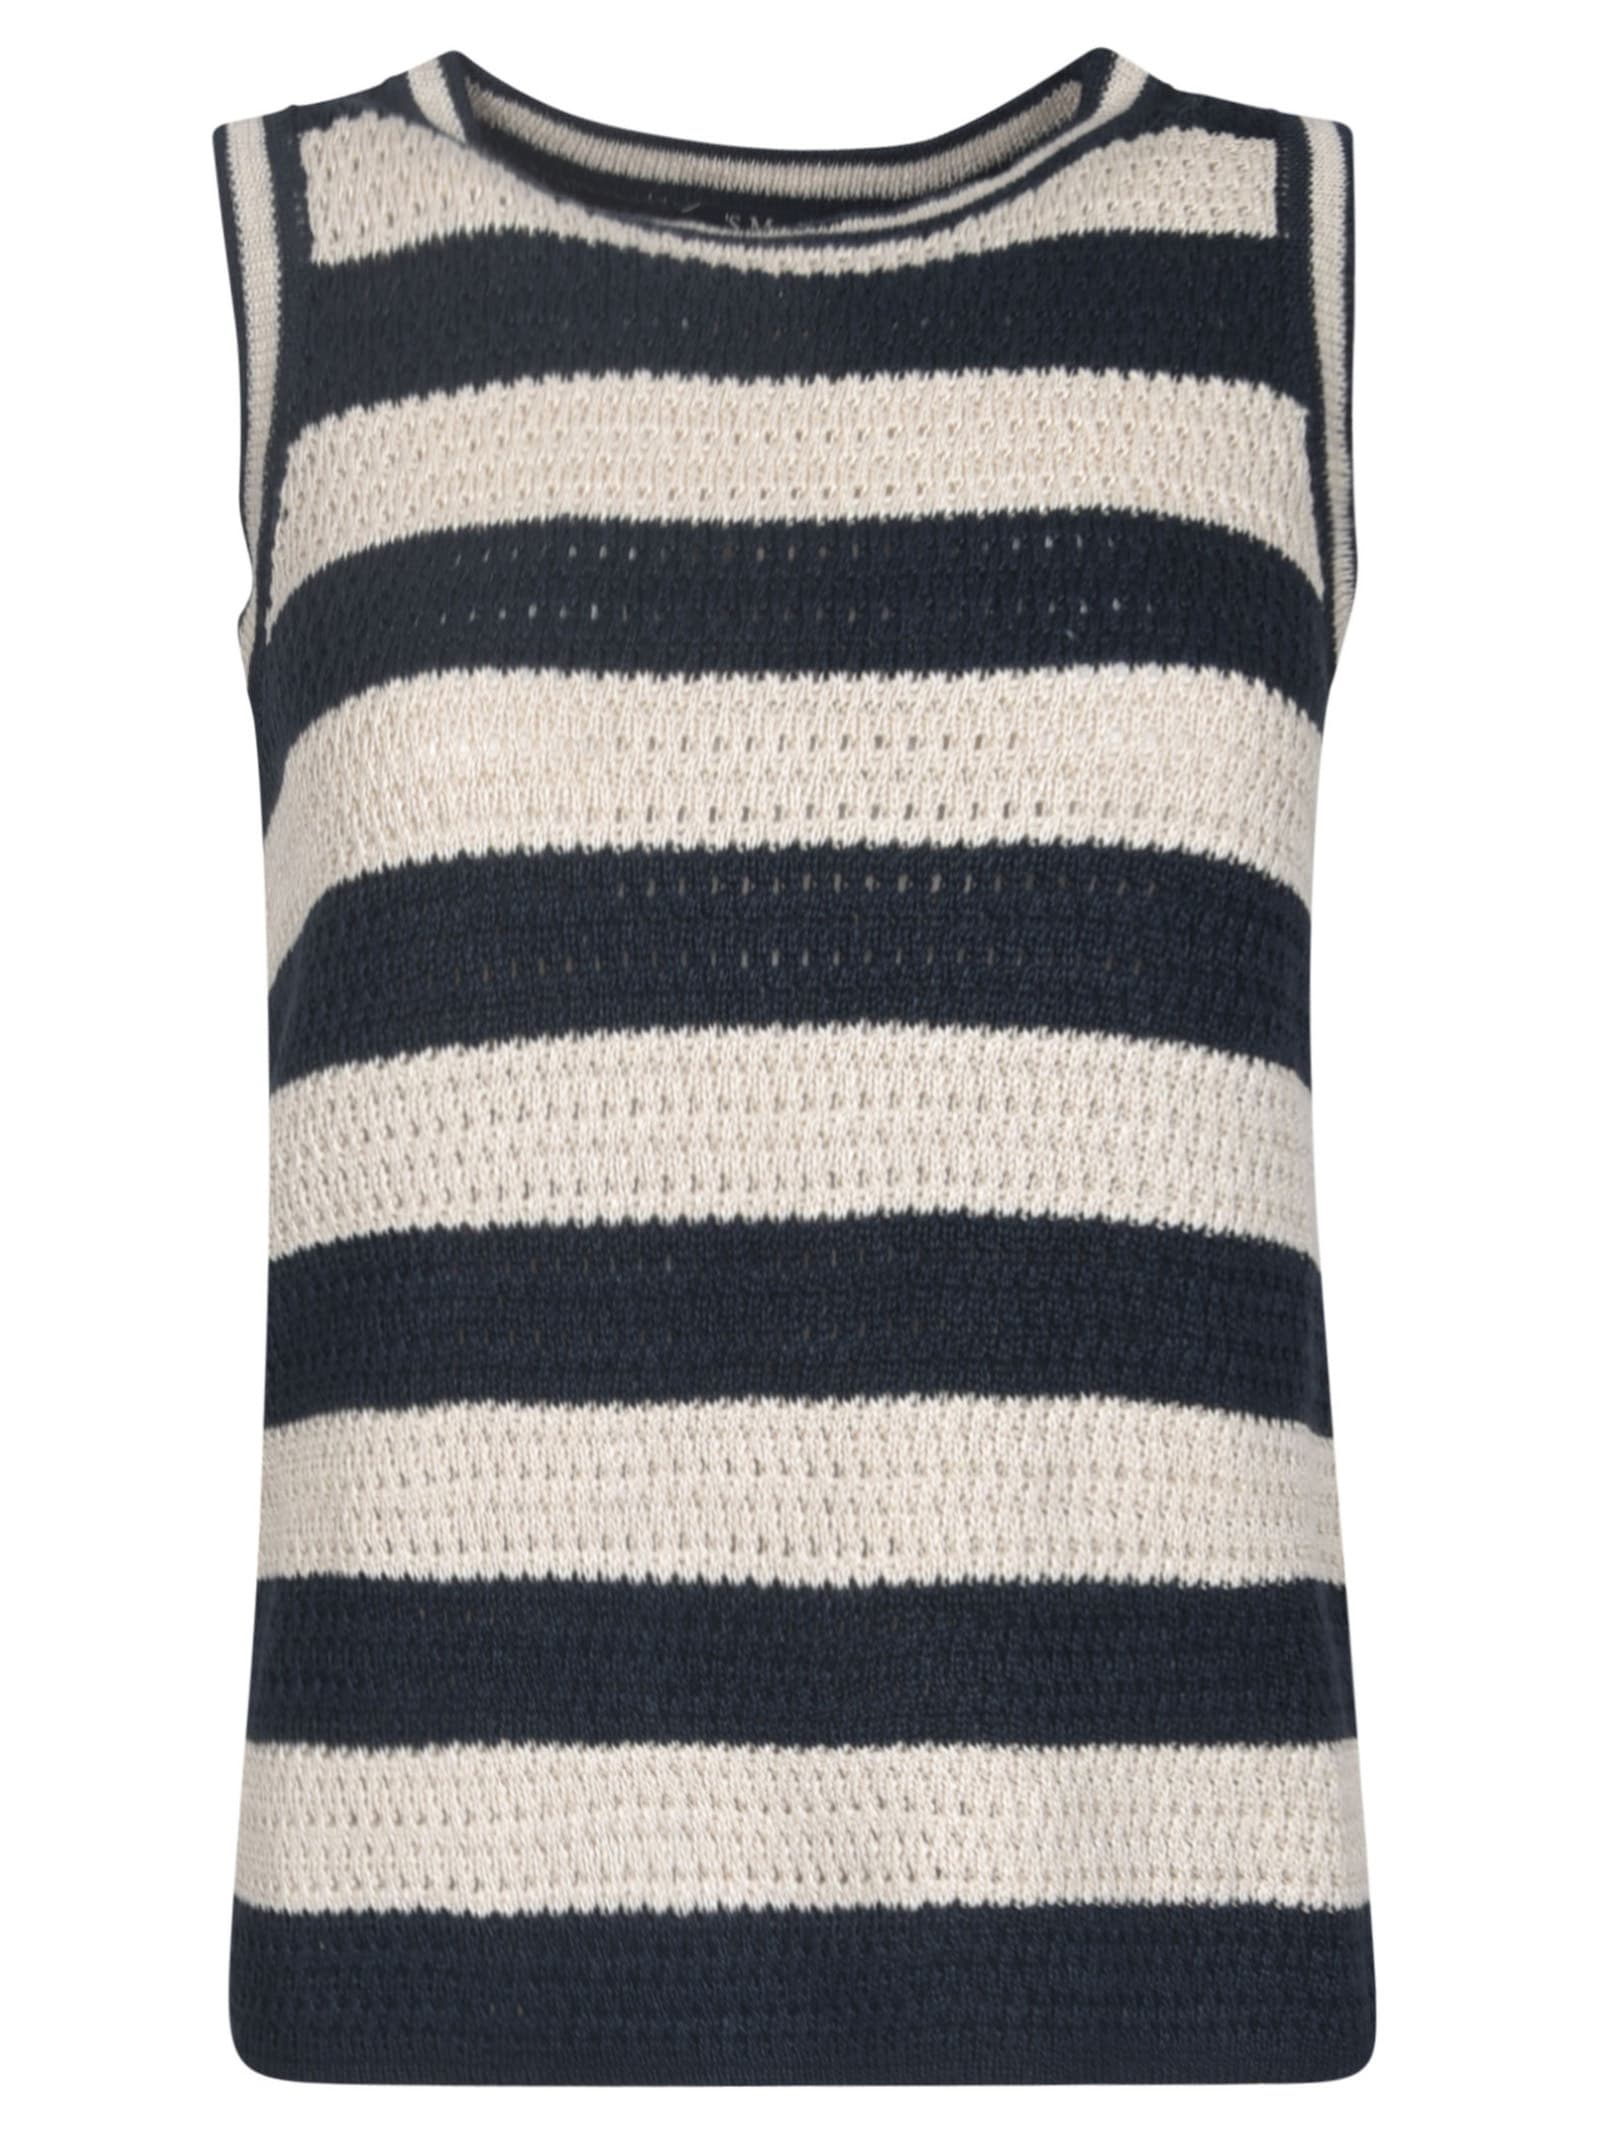 Stripe Crochet Top